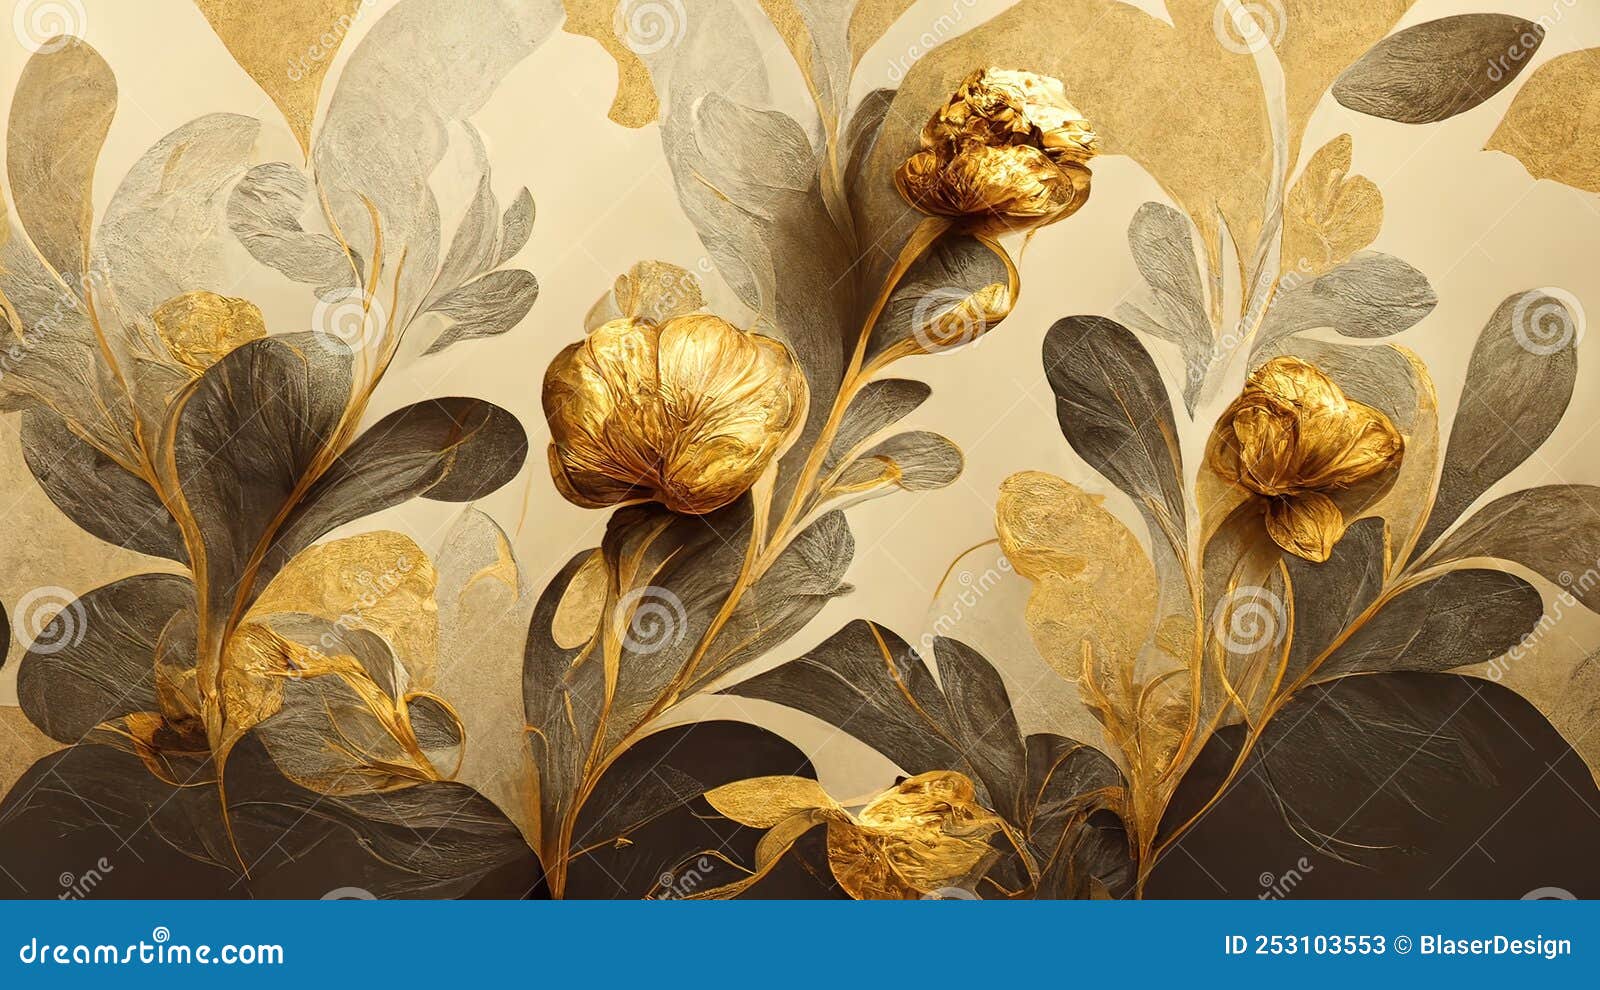 4K Golden Floral Background, Abstract Vintage Flower Design, Mural Art,  Gold Nature Stock Illustration - Illustration of pattern, food: 253103553